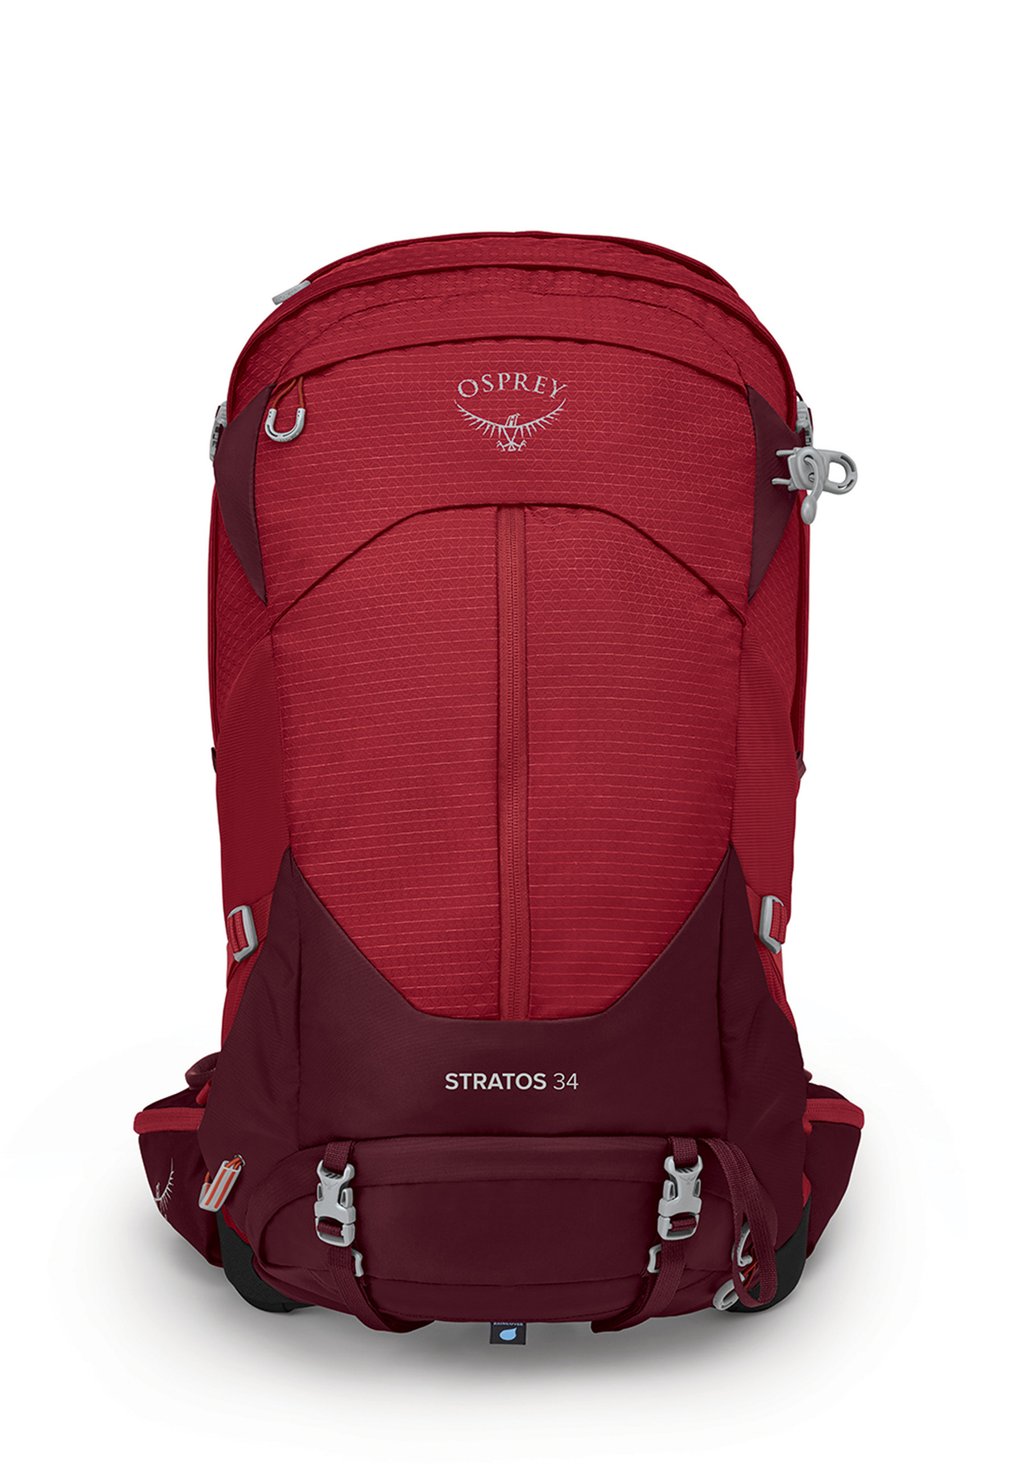 Рюкзак дорожный Stratos Osprey, цвет poinsettia red цена и фото